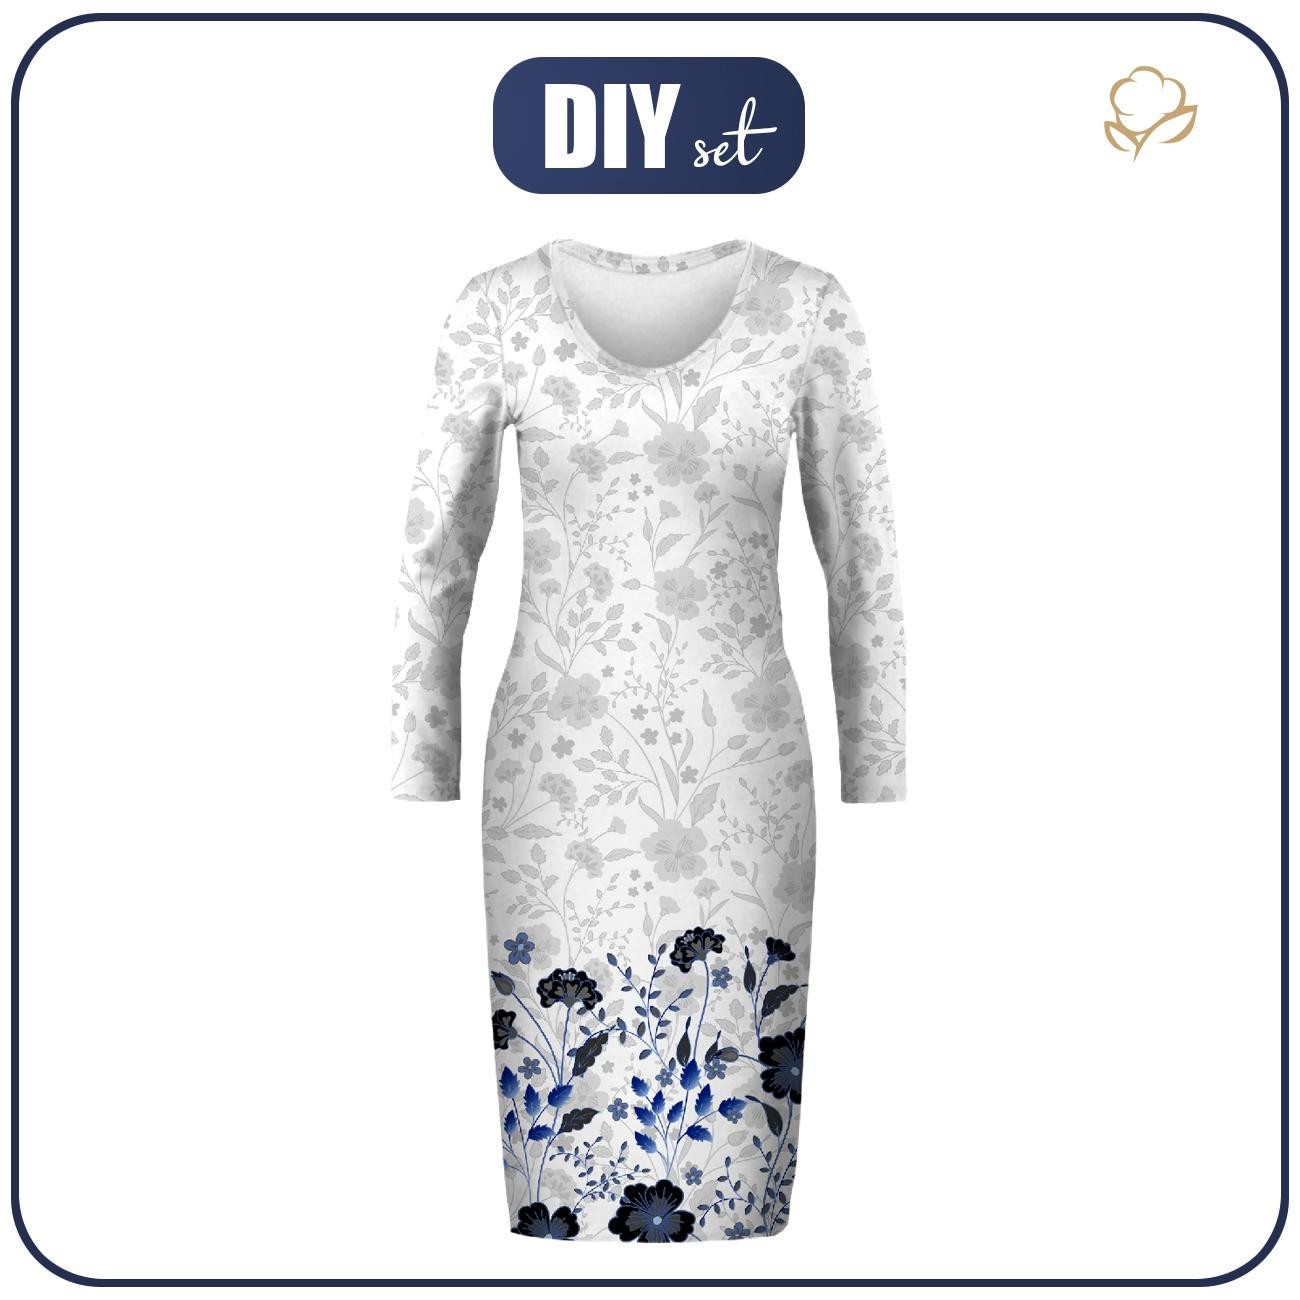 Tužkové šaty (ALISA) - KVĚTY (vzor 5 navy) / bílá - Sada šití